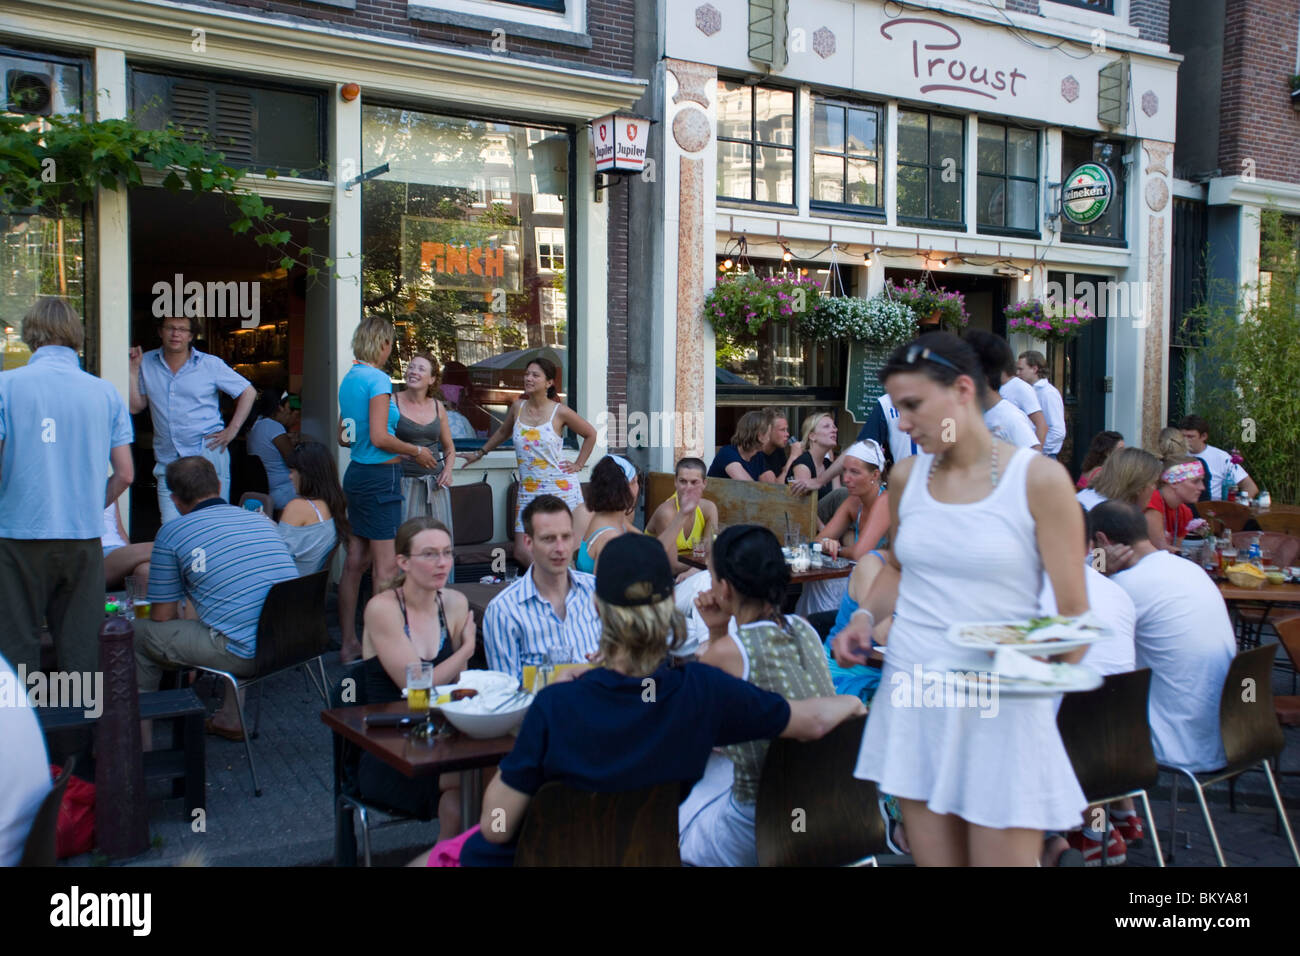 Persone, Cafe Finch, Cafe Proust, Jordaan, un sacco di gente seduta al di fuori del Cafe Finch e Proust, quartiere Jordaan, Amsterdam, Olanda Foto Stock